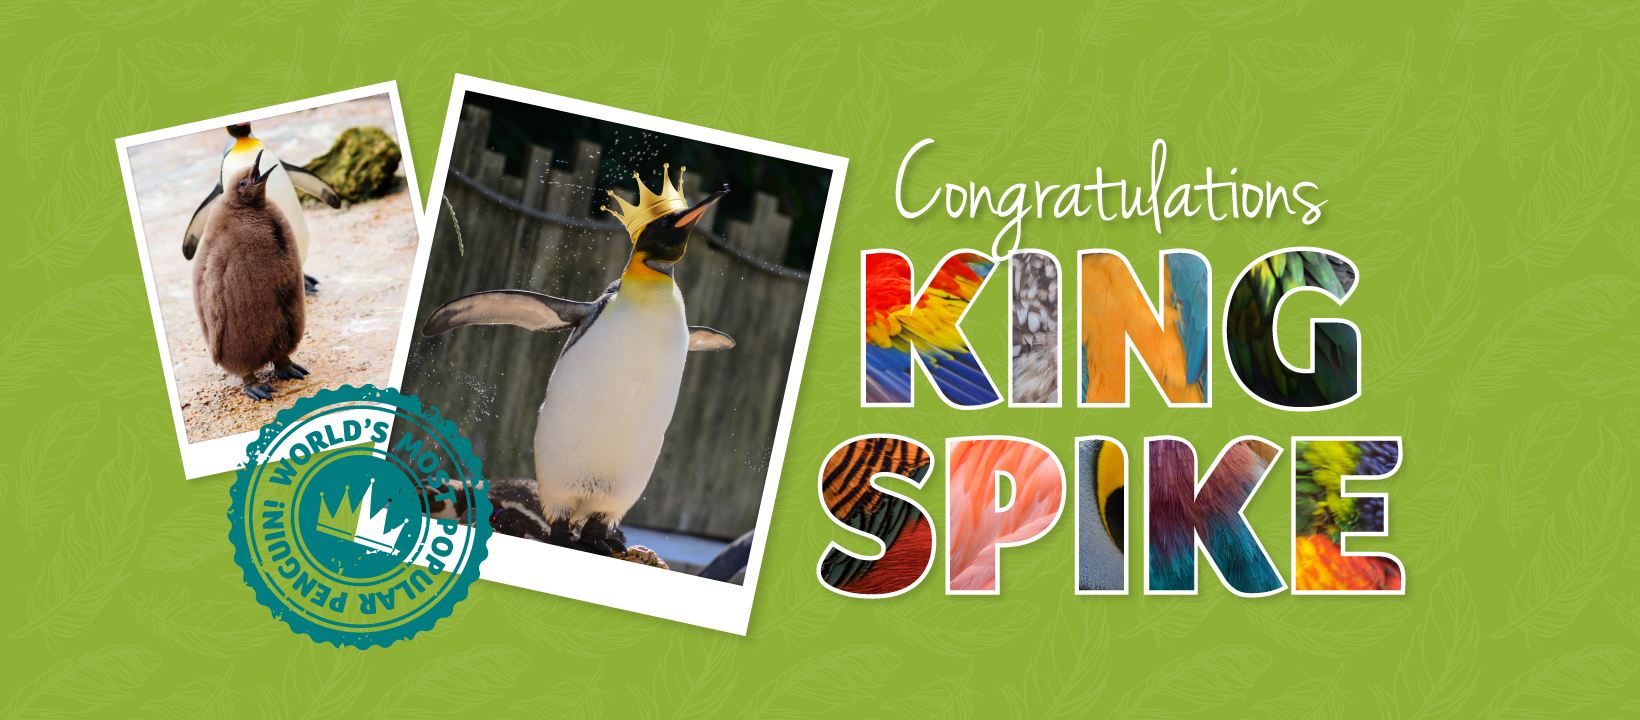 Birdland King Spike Facebook Cover 1640x720px - Birdland Superstar Spike Crowned King Penguin